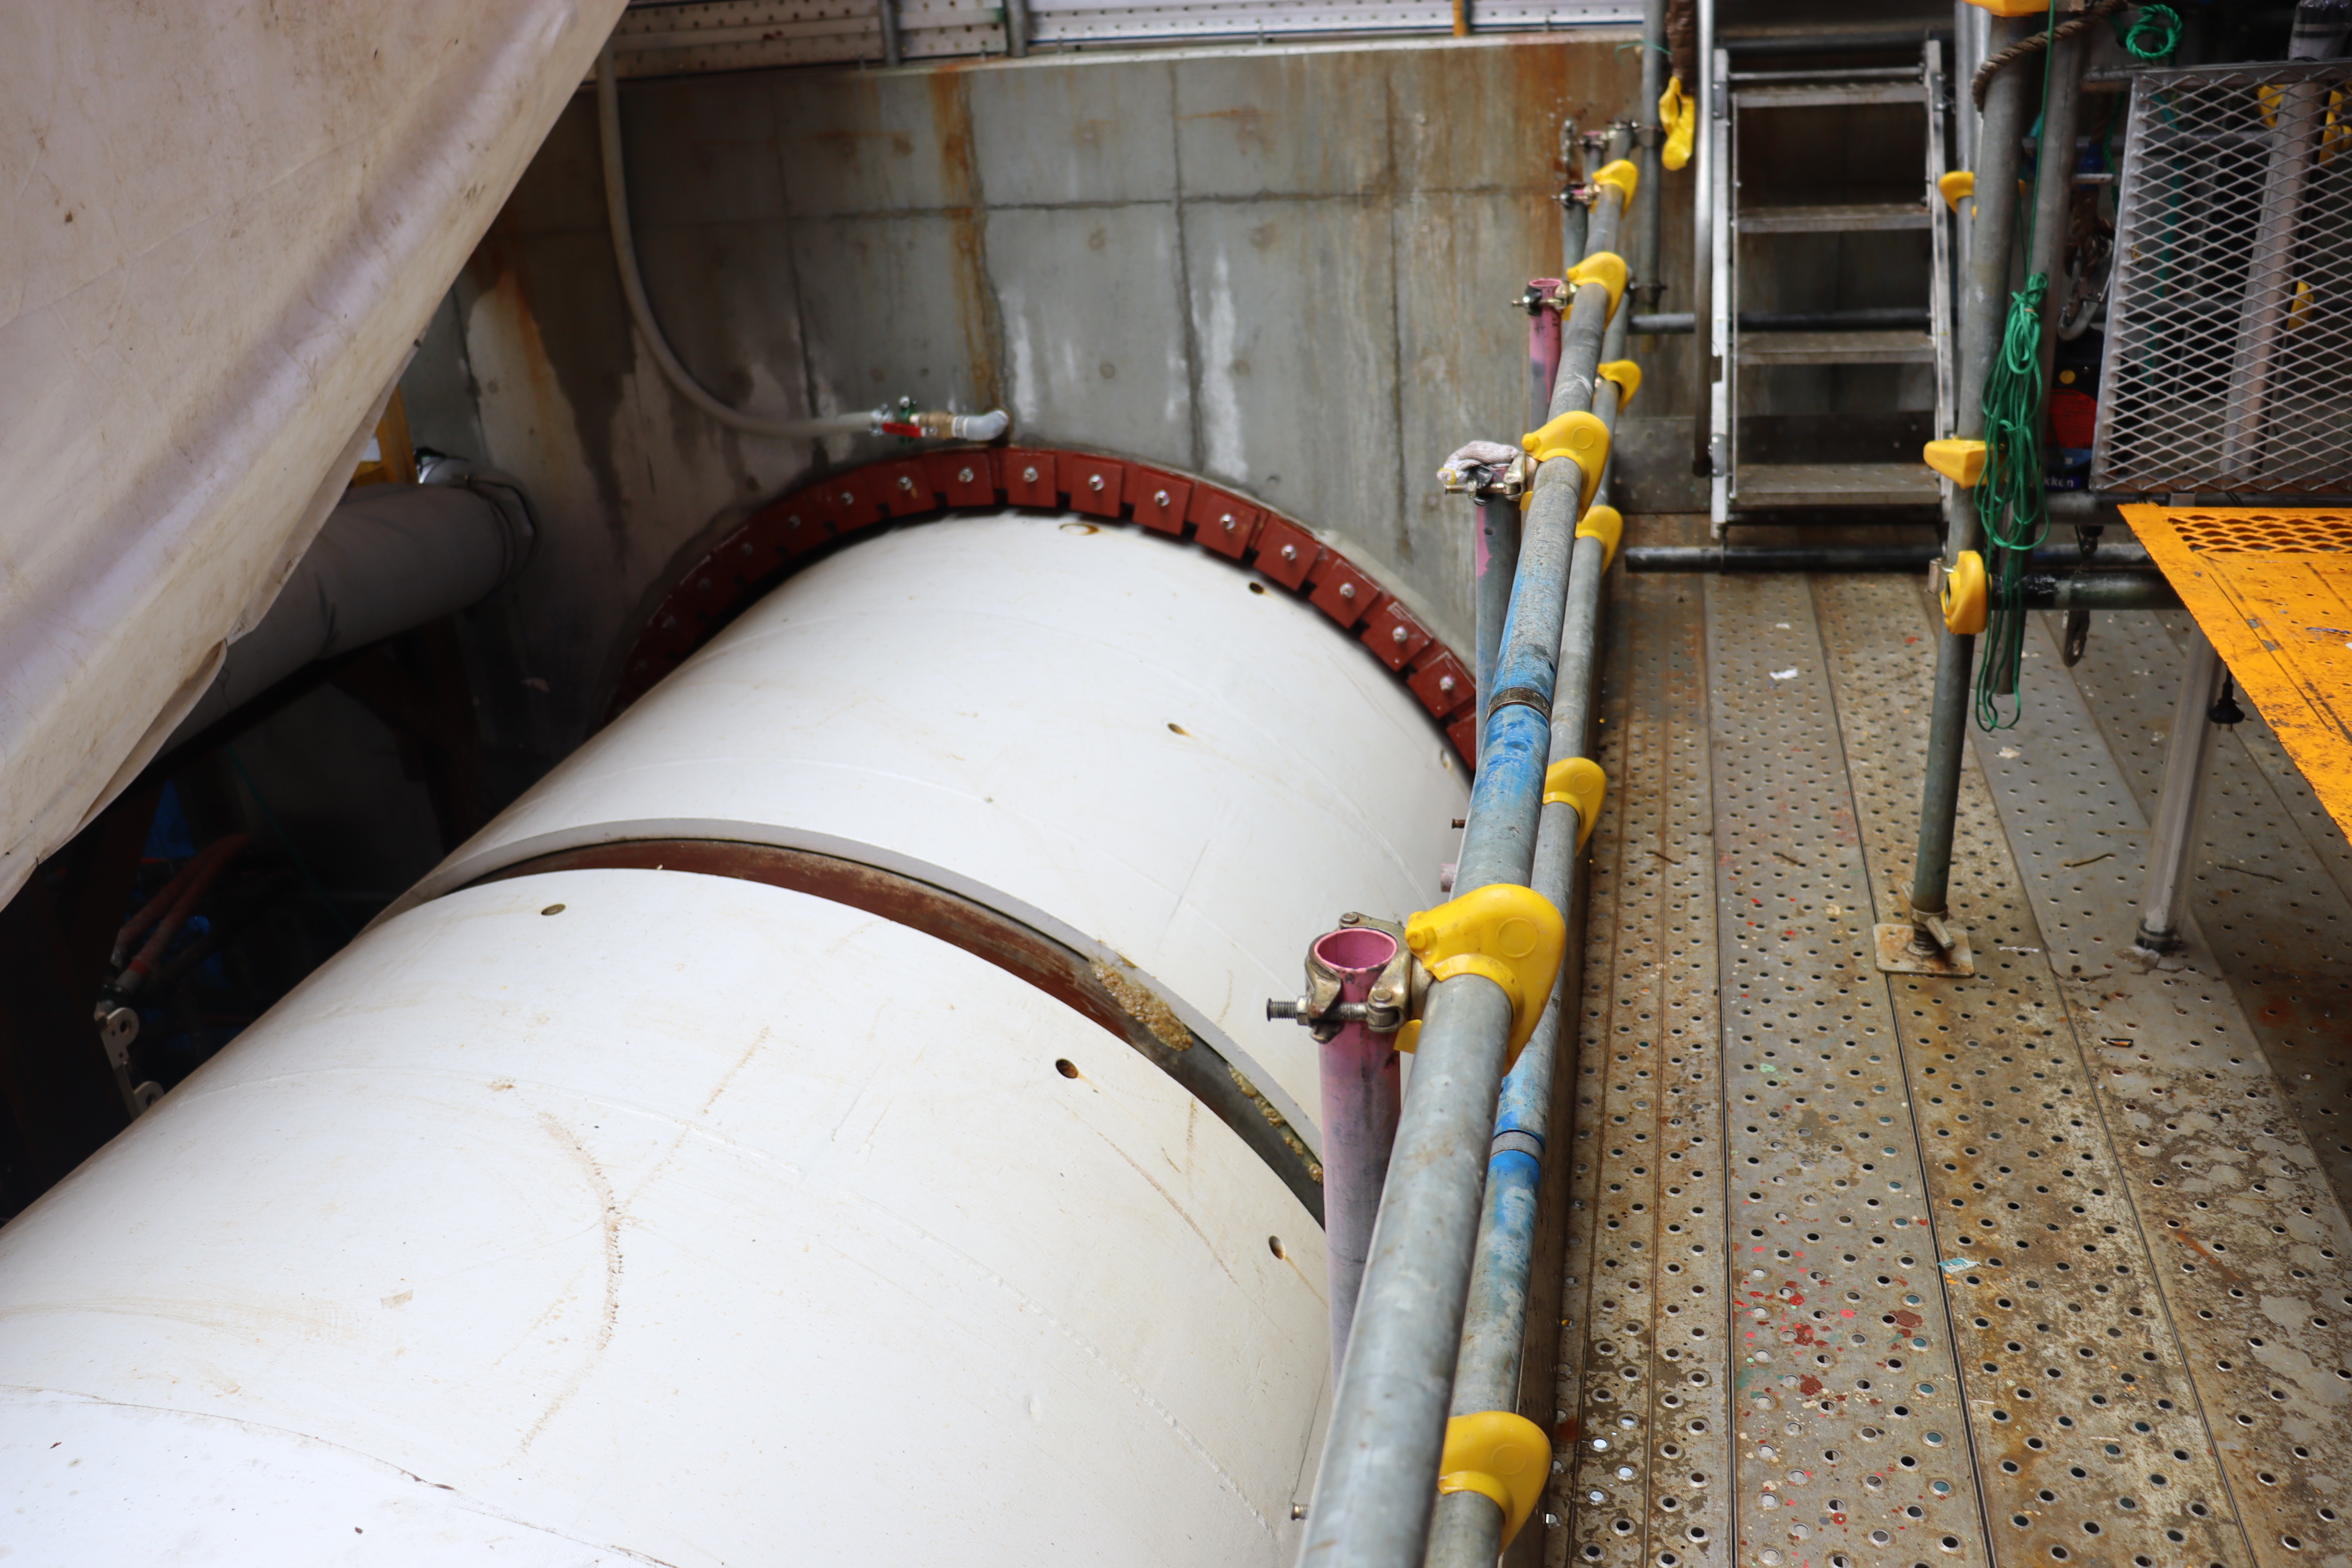 ALPS処理水希釈放出設備および関連施設設置工事の開始について